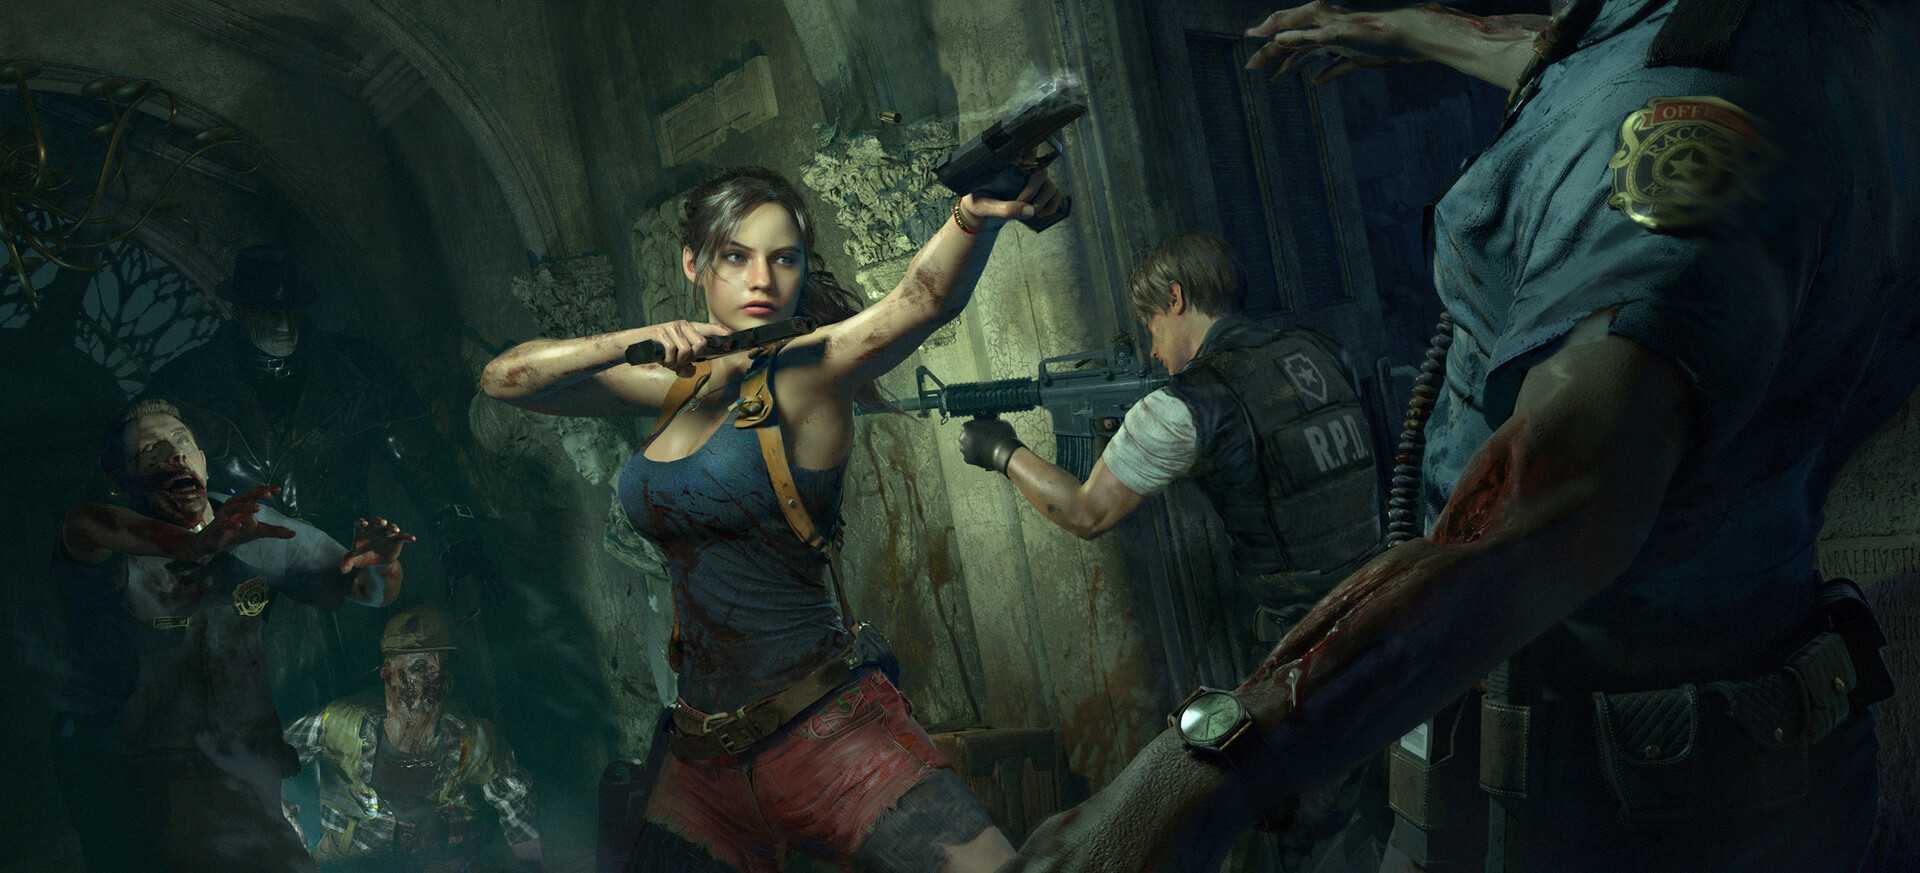 Рецензия на Resident Evil 5 — по случаю 10-летнего юбилея игры